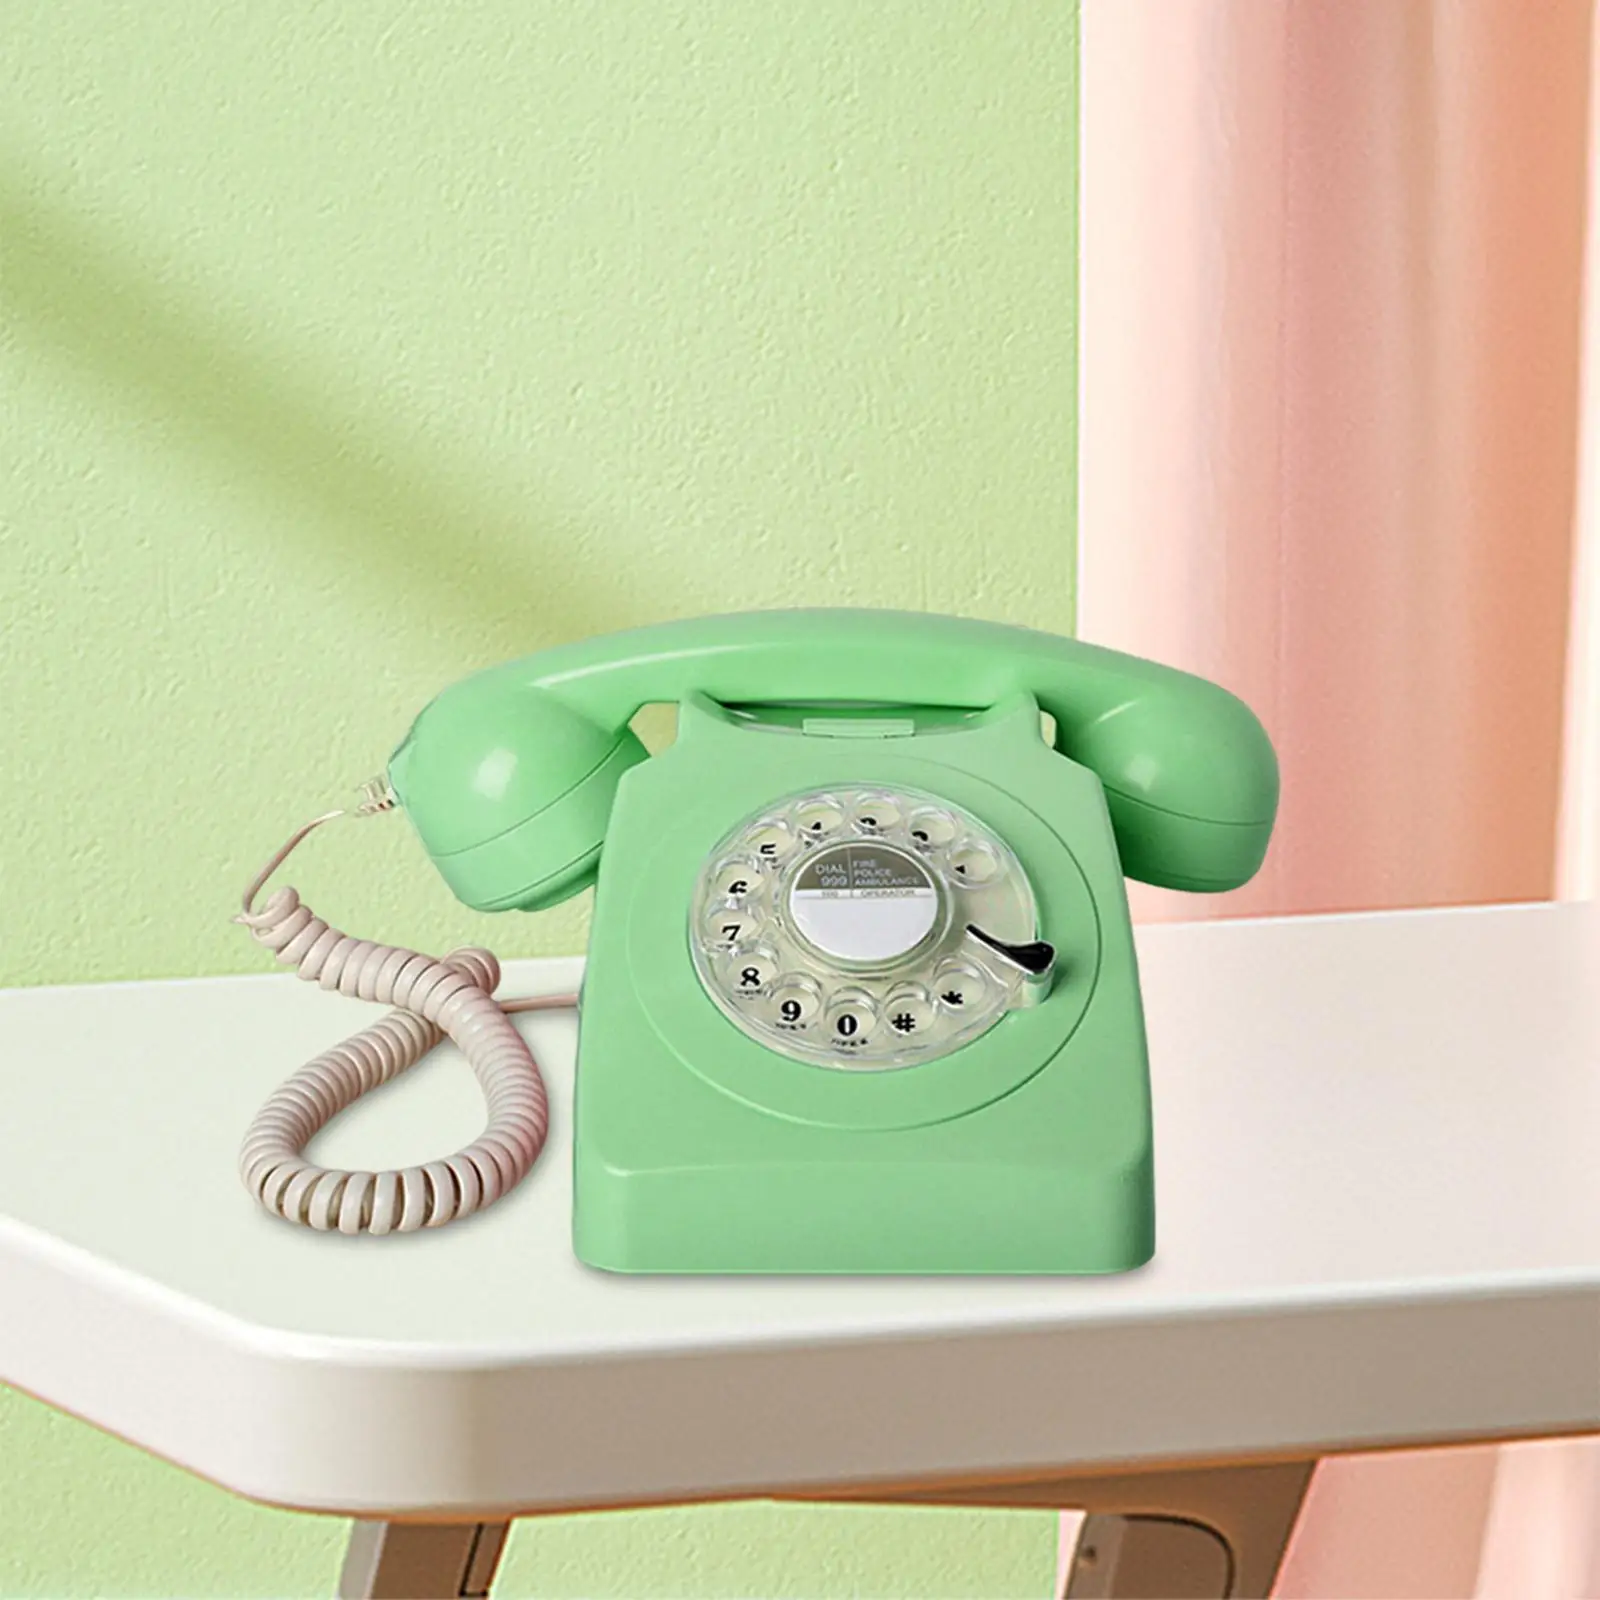 Retro Landline Telephone Vintage Rotary Phone Large Numeric Keypad 1960'Style Old Fashion Retro Phone for Living Room Decor